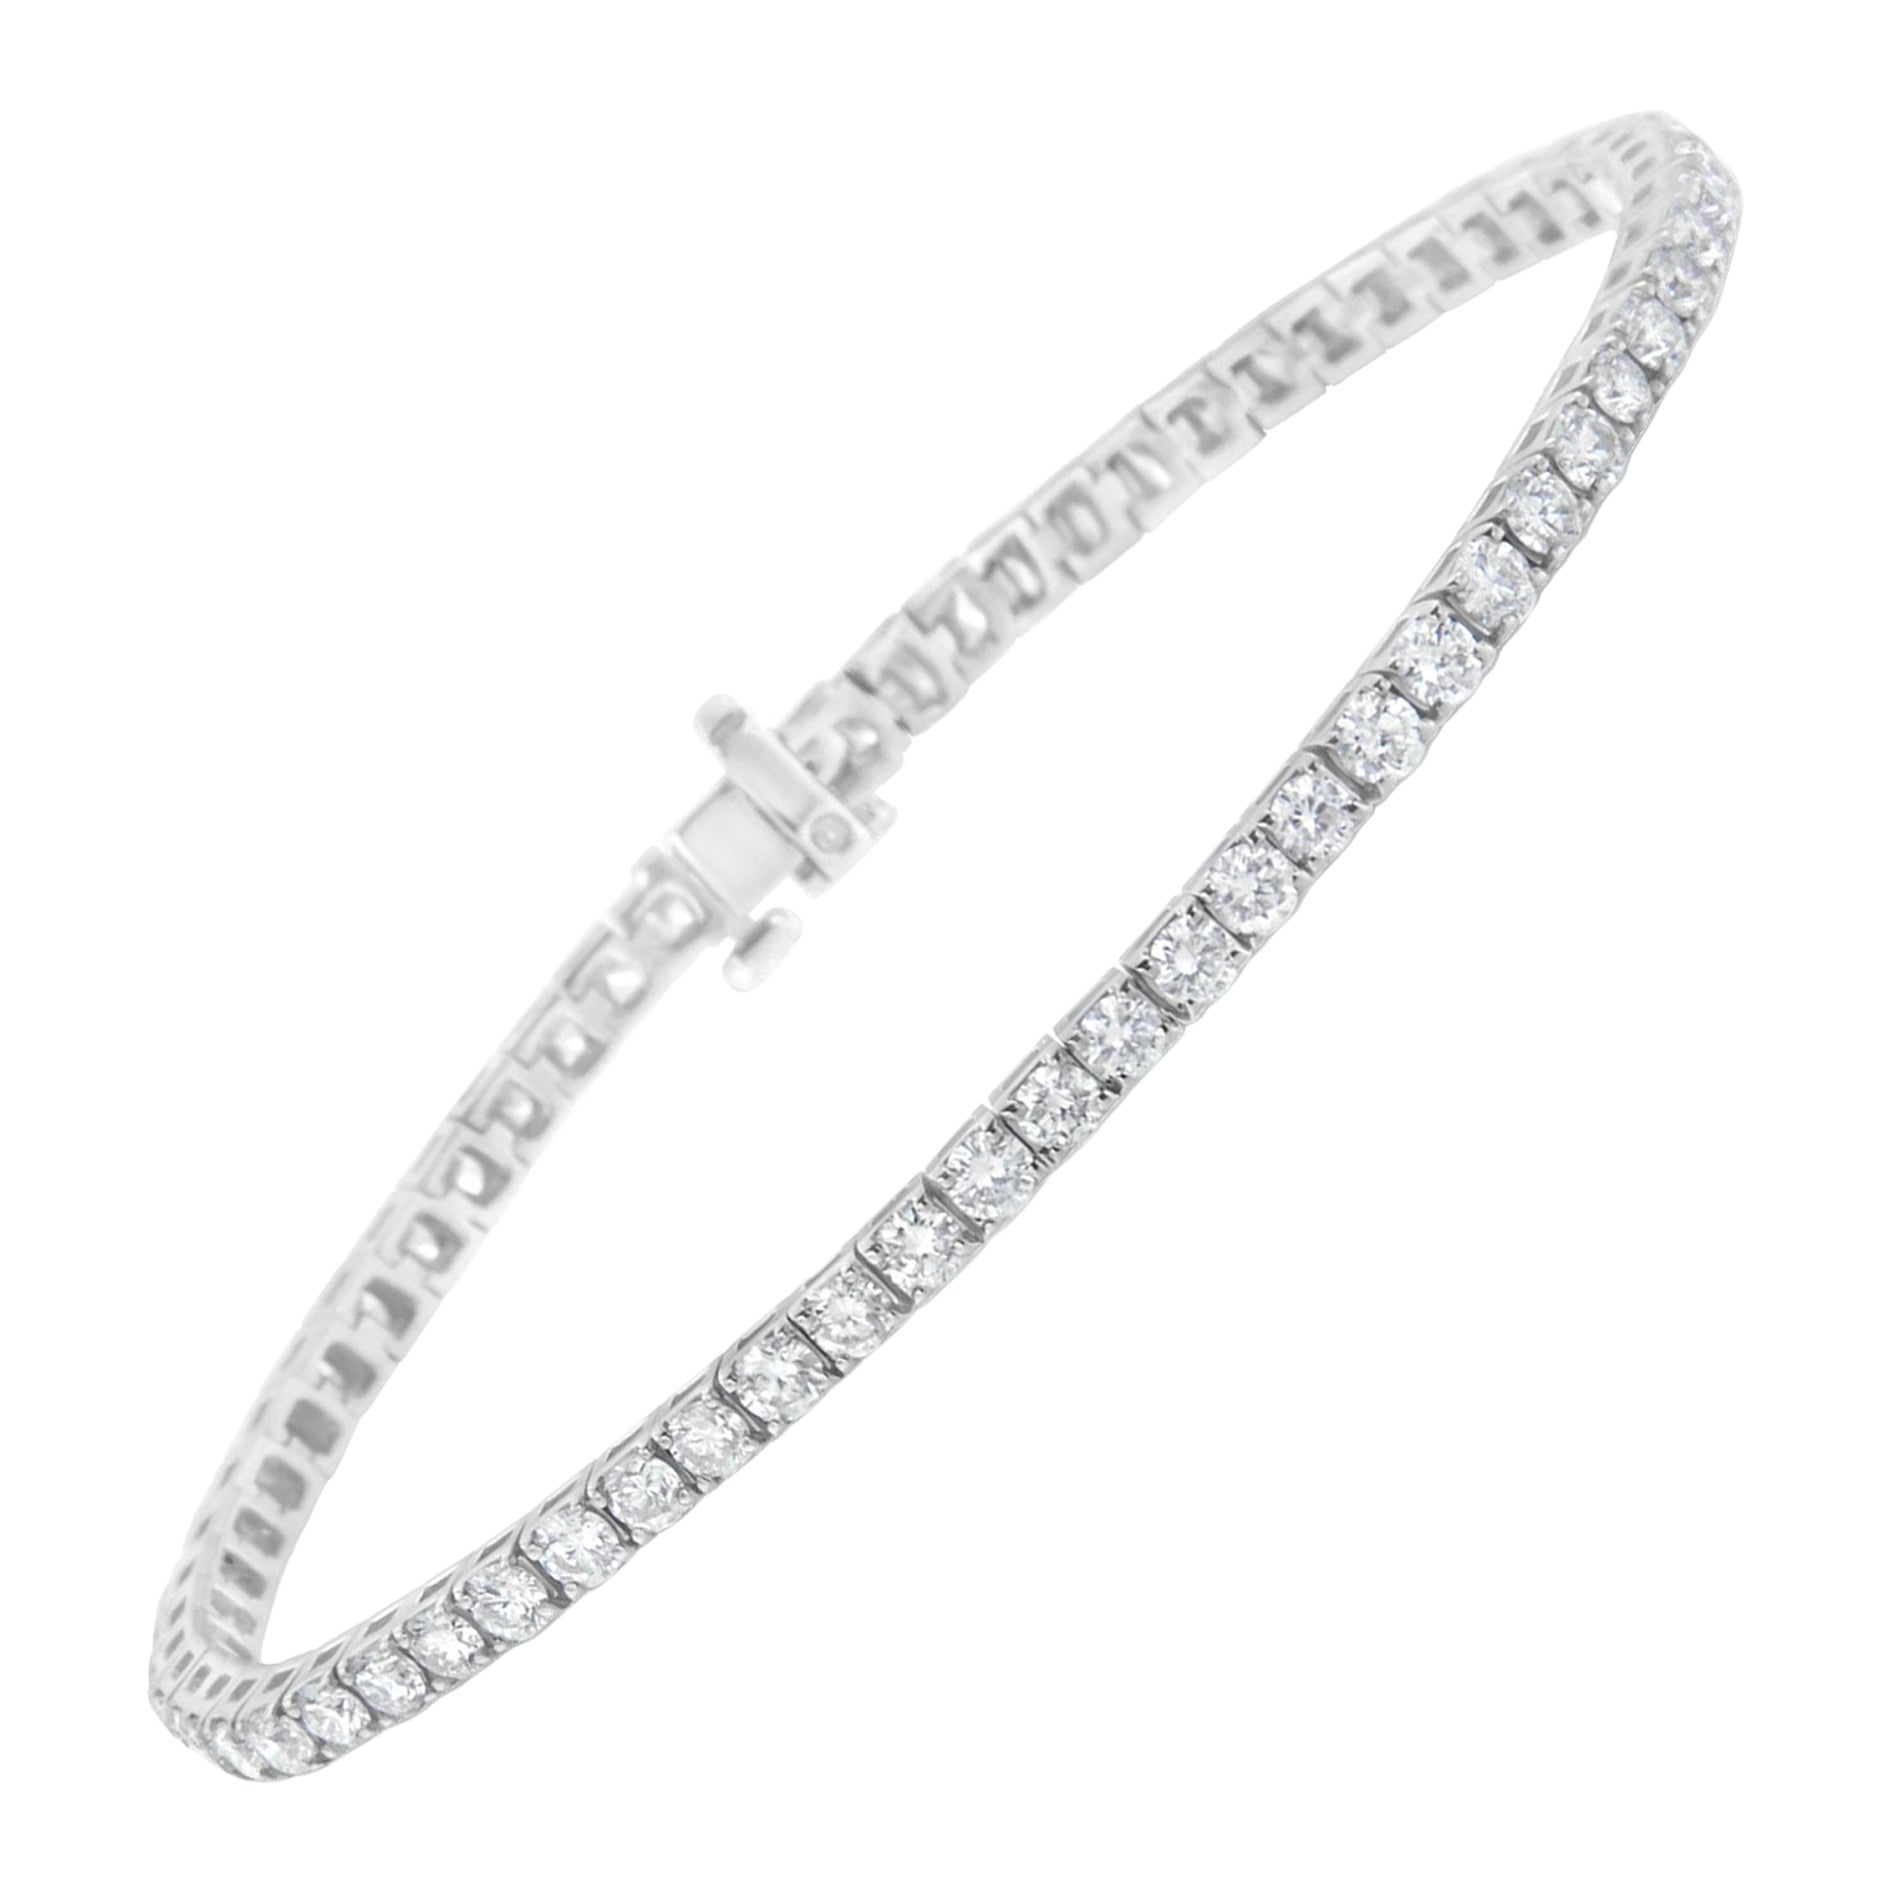 Round Brilliant Diamond Bangle Bracelet (1.34 ctw) | Costco